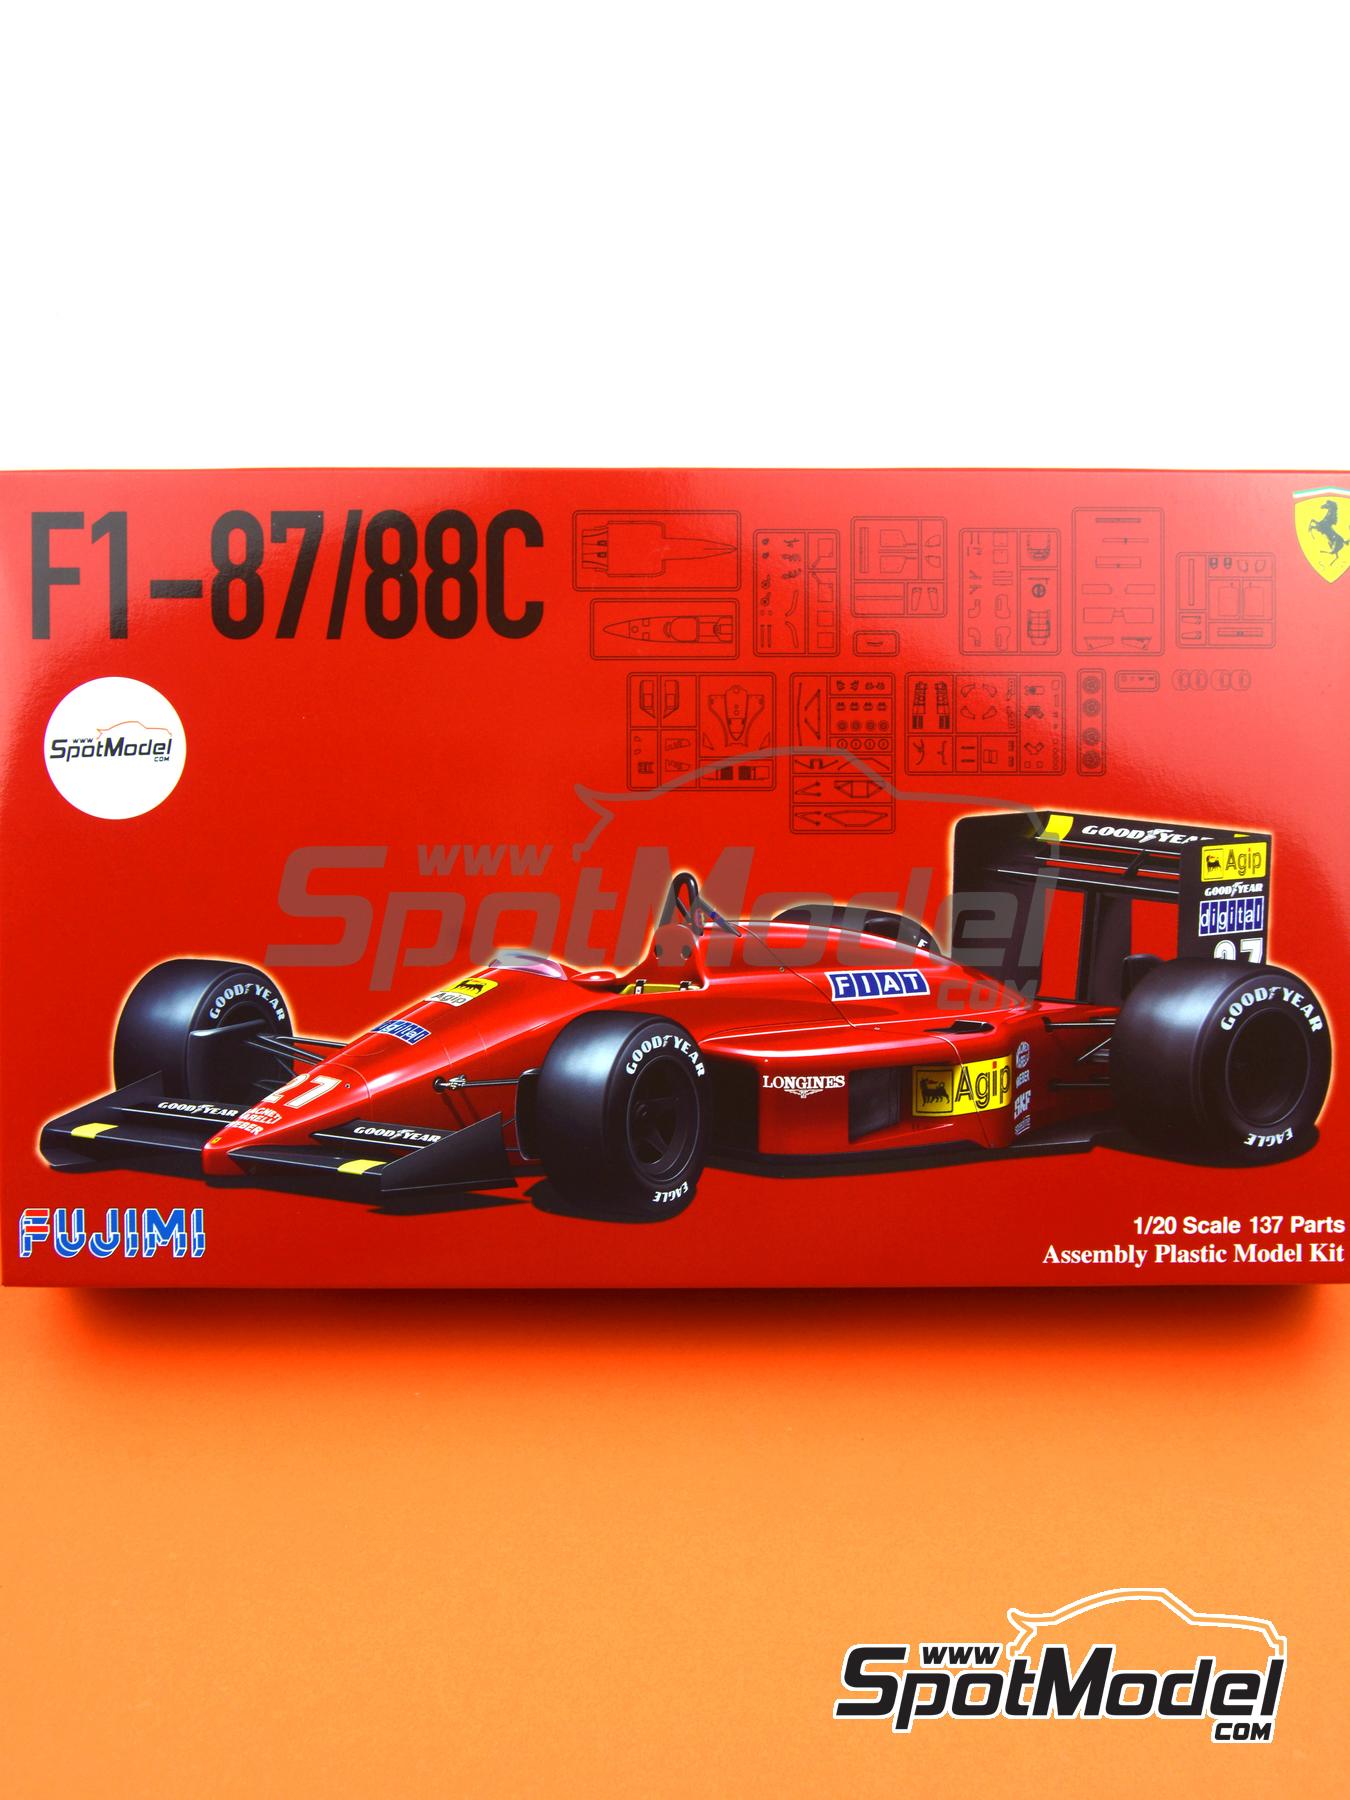 Fujimi 091983: Maqueta de coche escala 1/20 - Ferrari F1 87/88C Equipo  Scuderia Ferrari patrocinado por Fiat Nº 27, 28 - Michele Alboreto (IT),  Gerhard Berger (AT) - Campeonato del Mundo FIA de Formula 1 1988 (ref.  FJ091983)